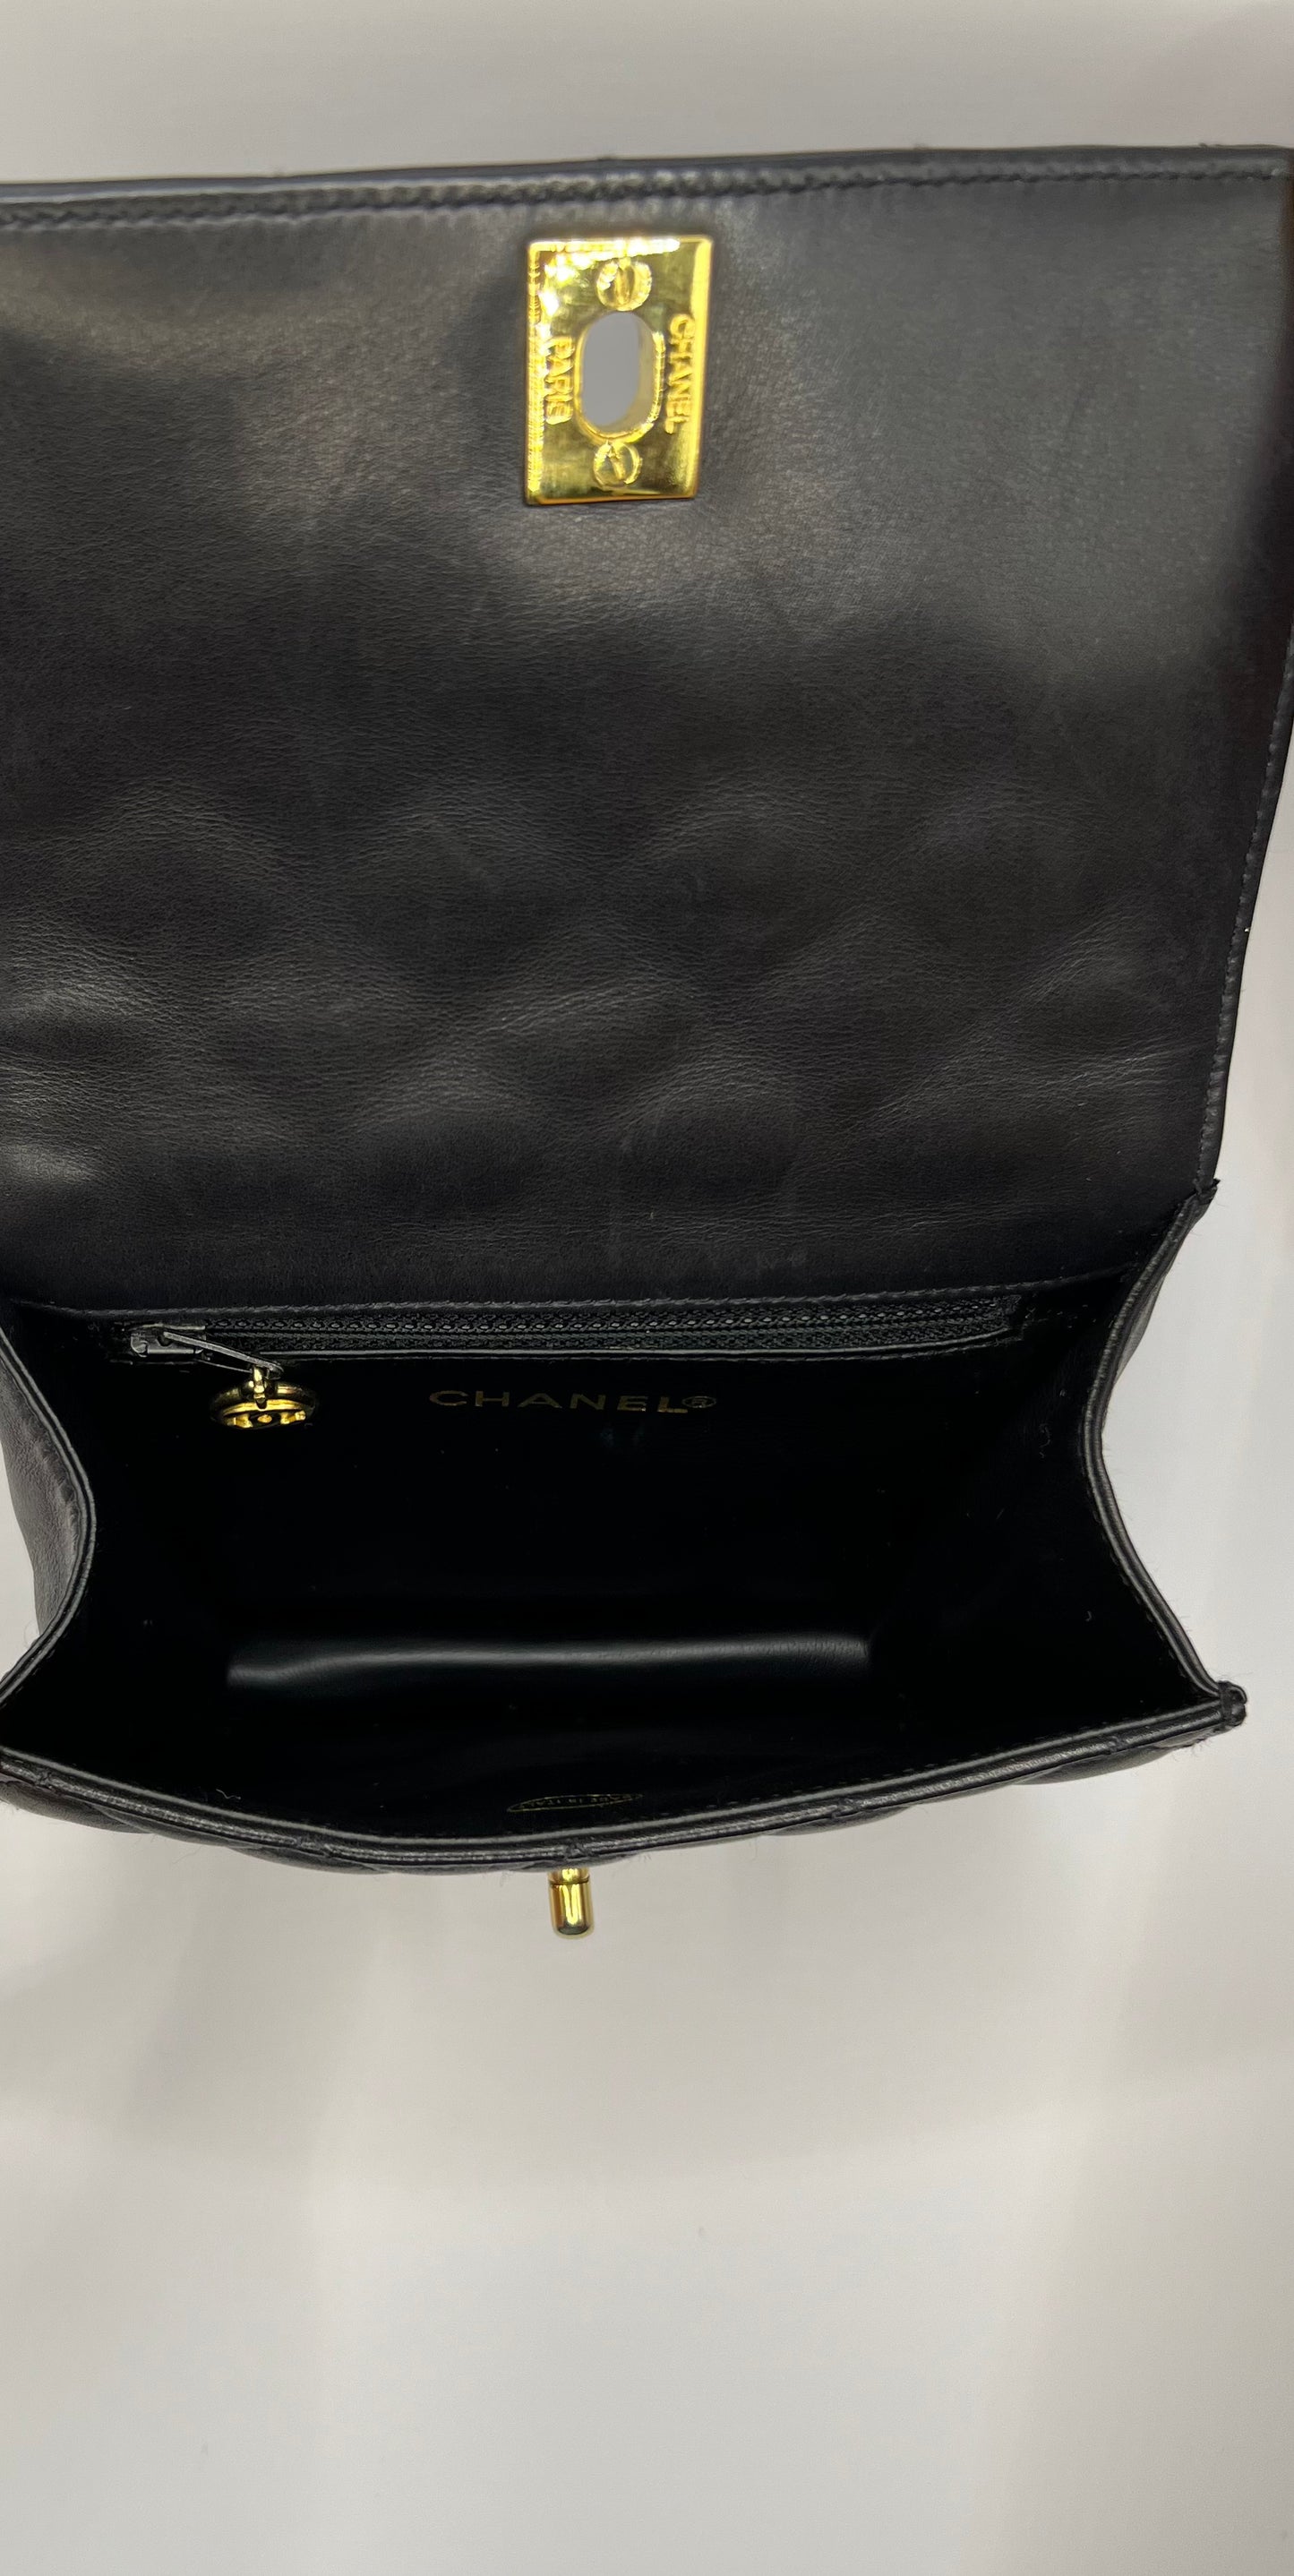 Black Chanel belt bag